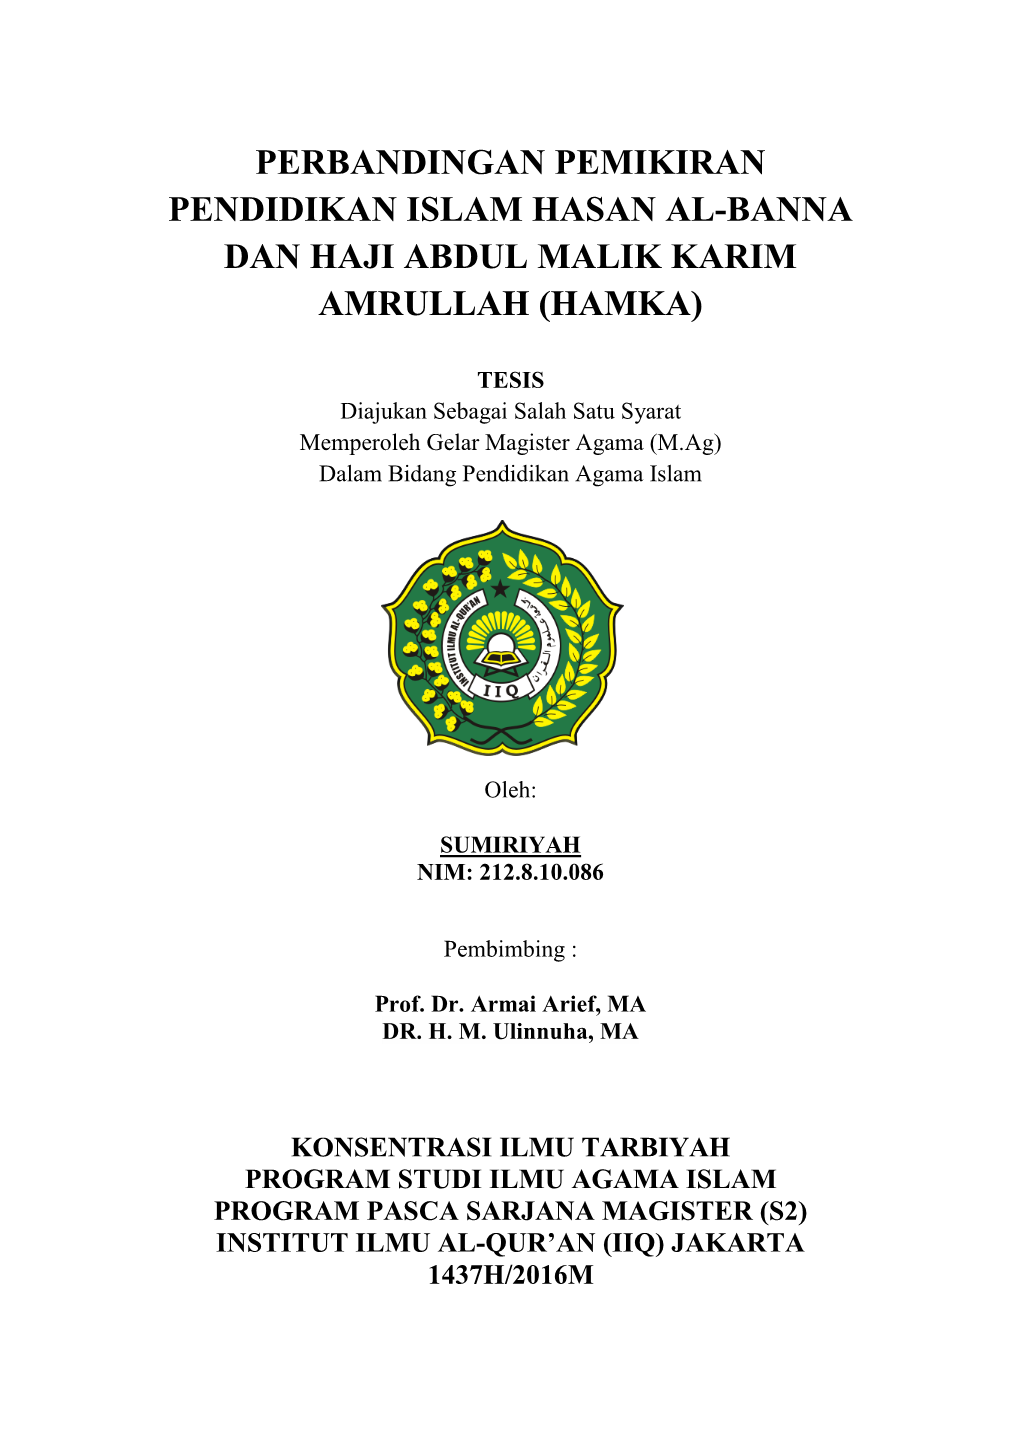 Perbandingan Pemikiran Pendidikan Islam Hasan Al-Banna Dan Haji Abdul Malik Karim Amrullah (Hamka)